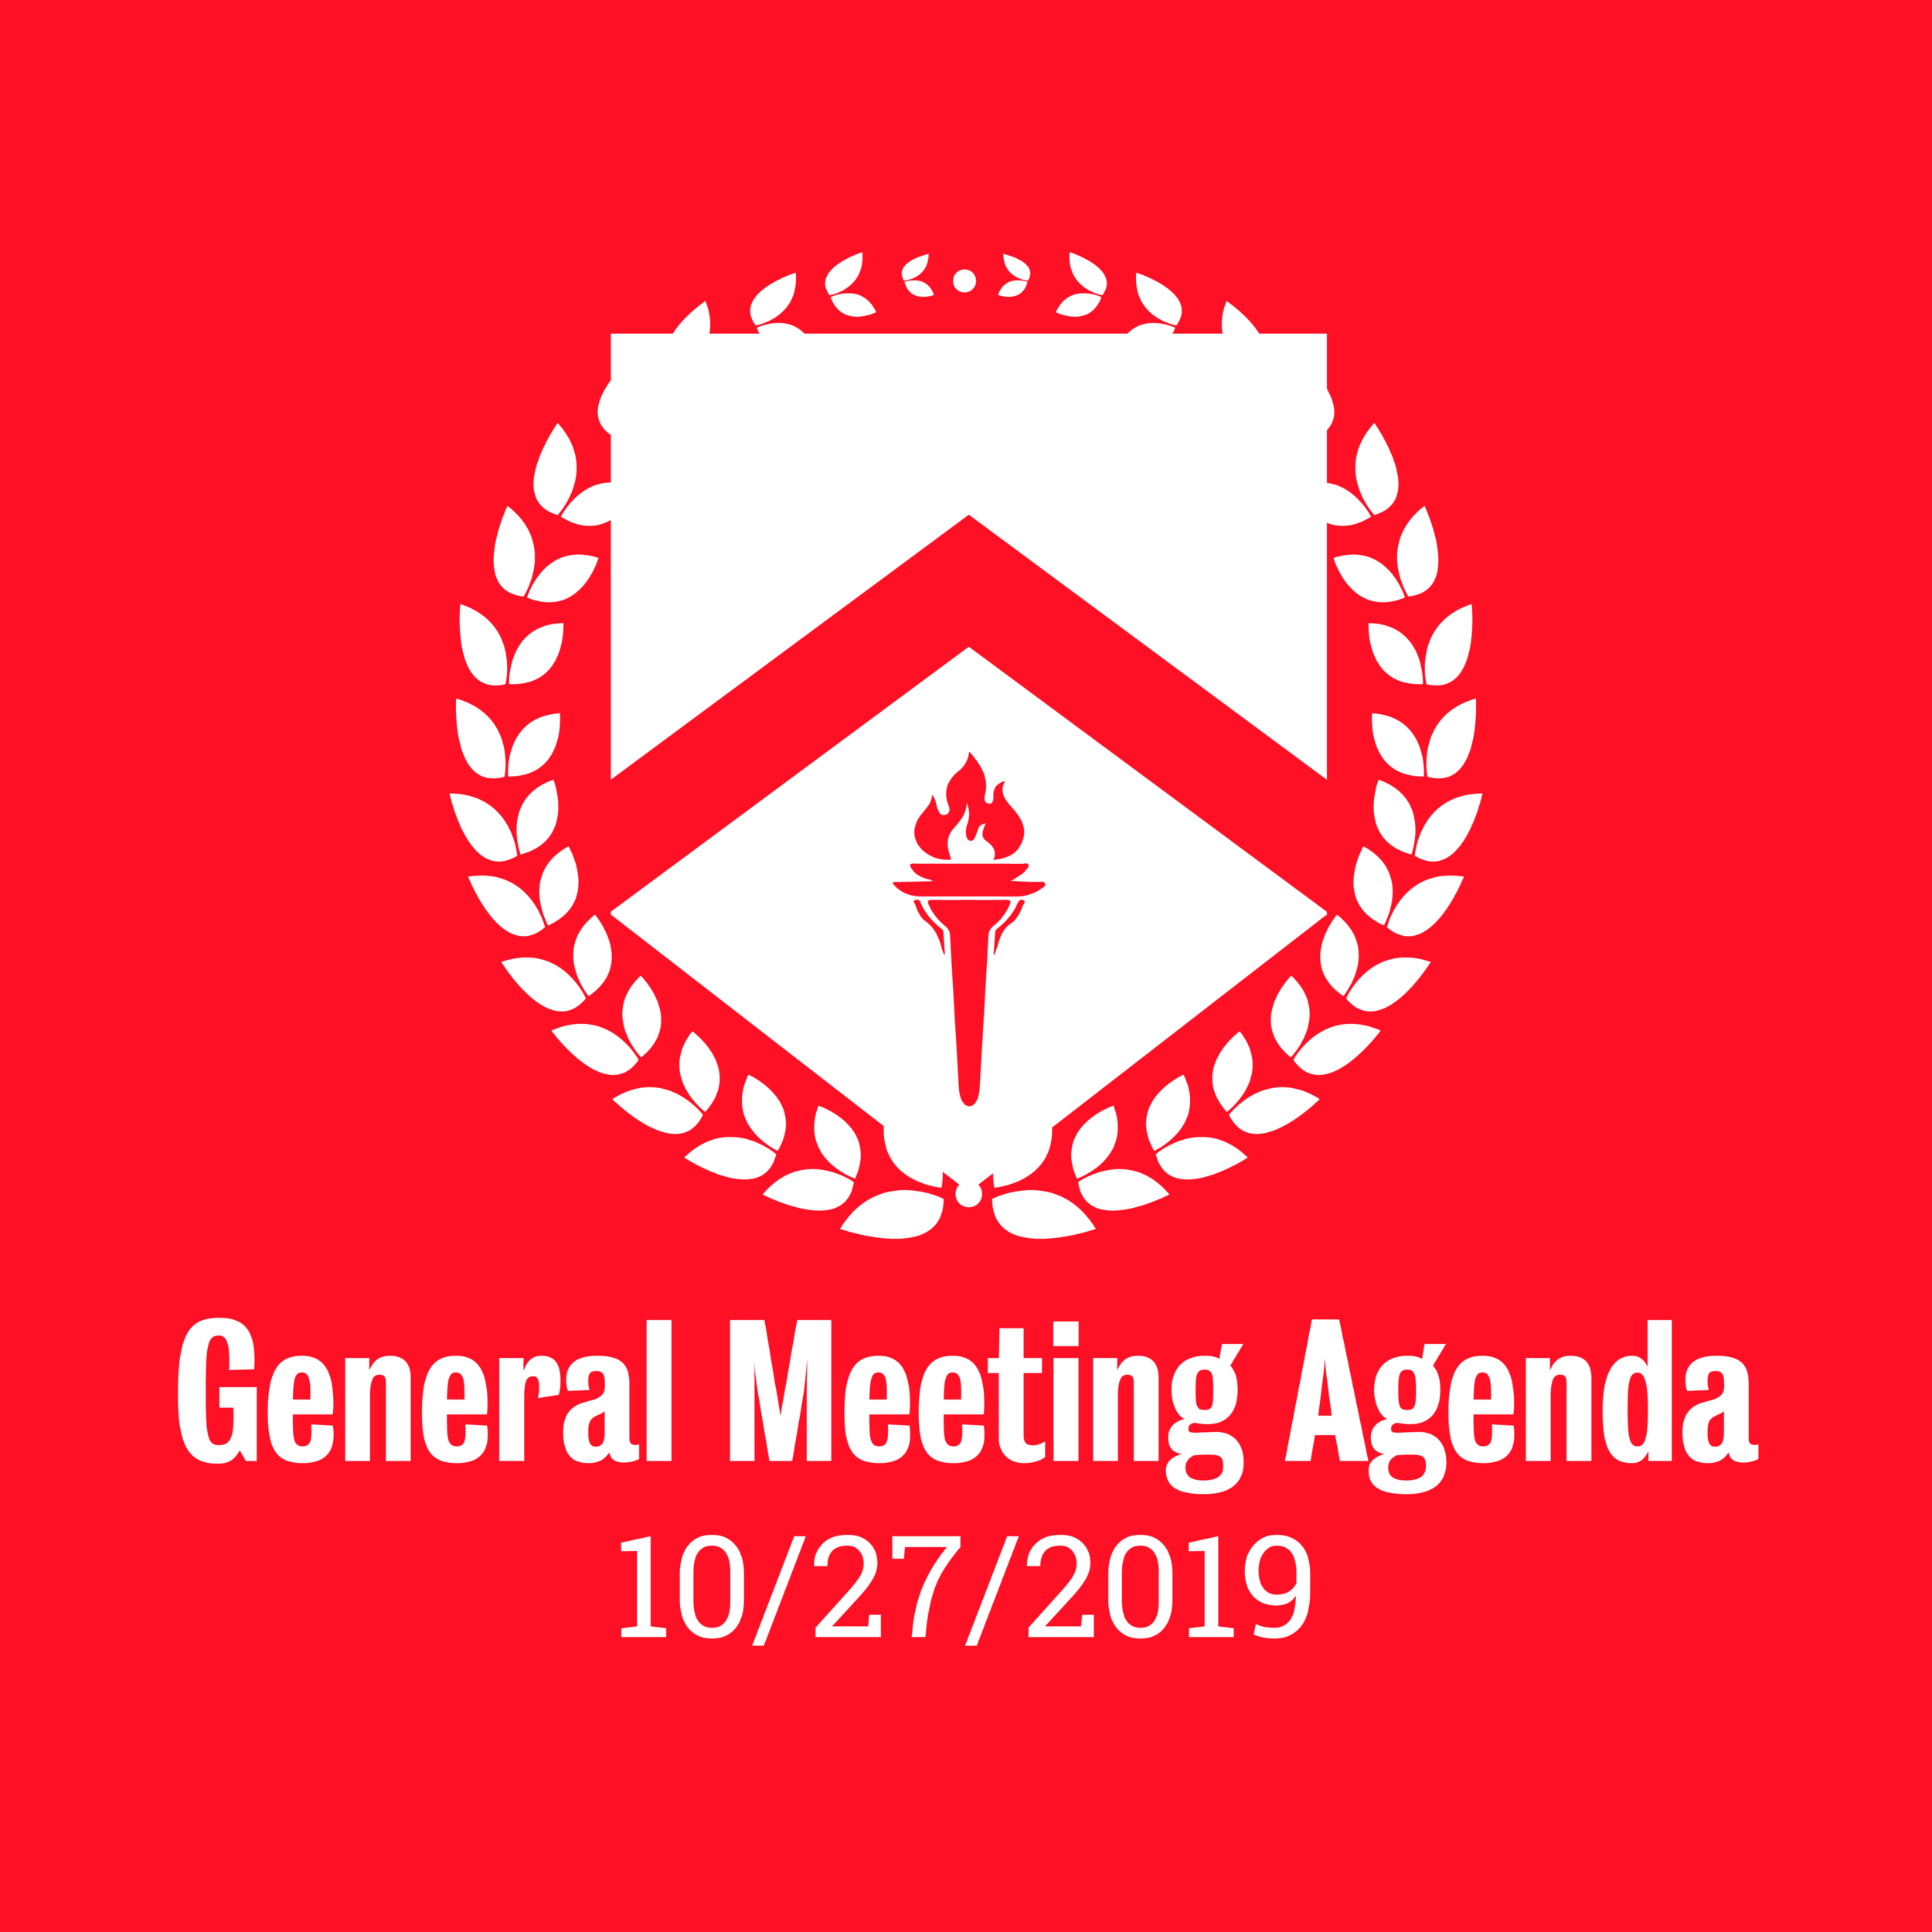 General Meeting Agenda 10/27/2019